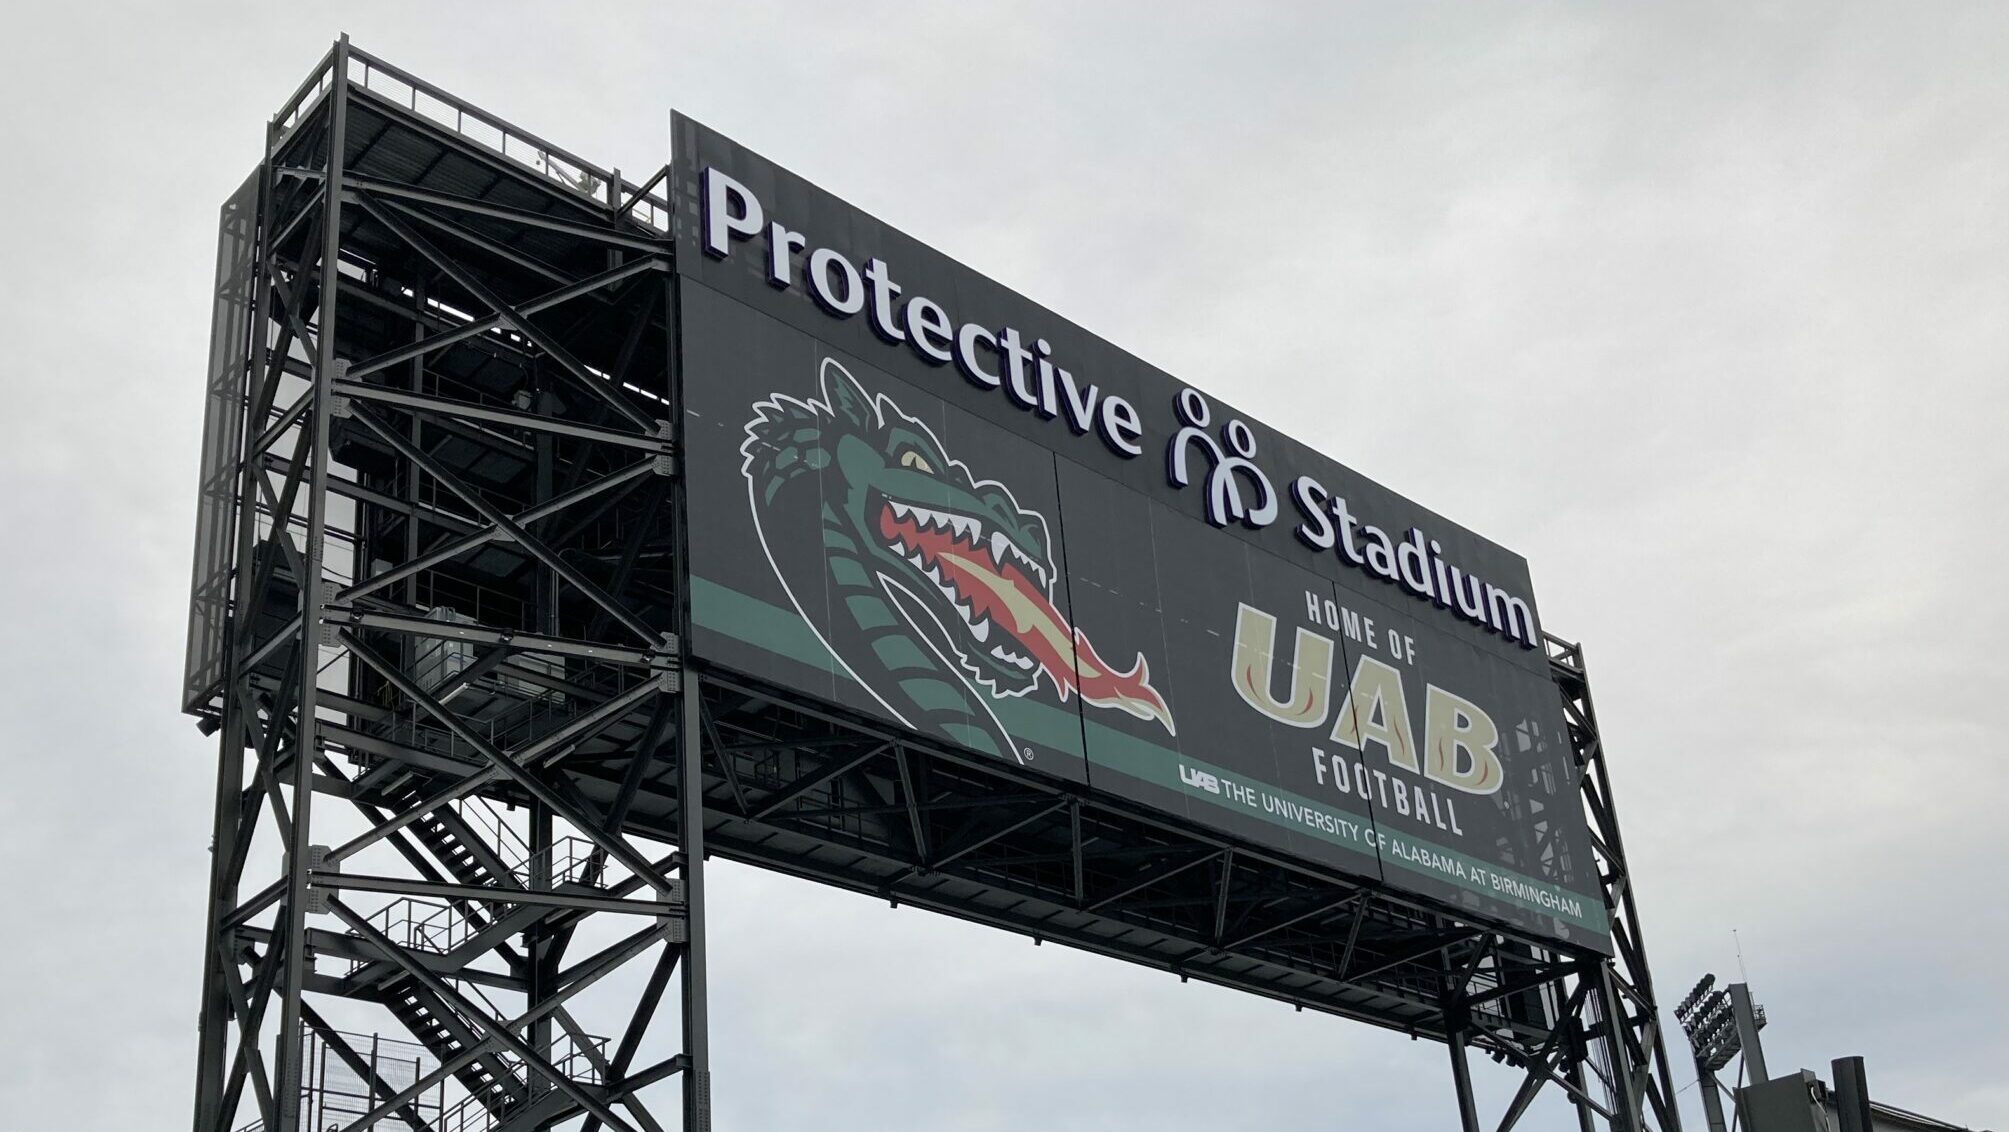 Protective Stadium